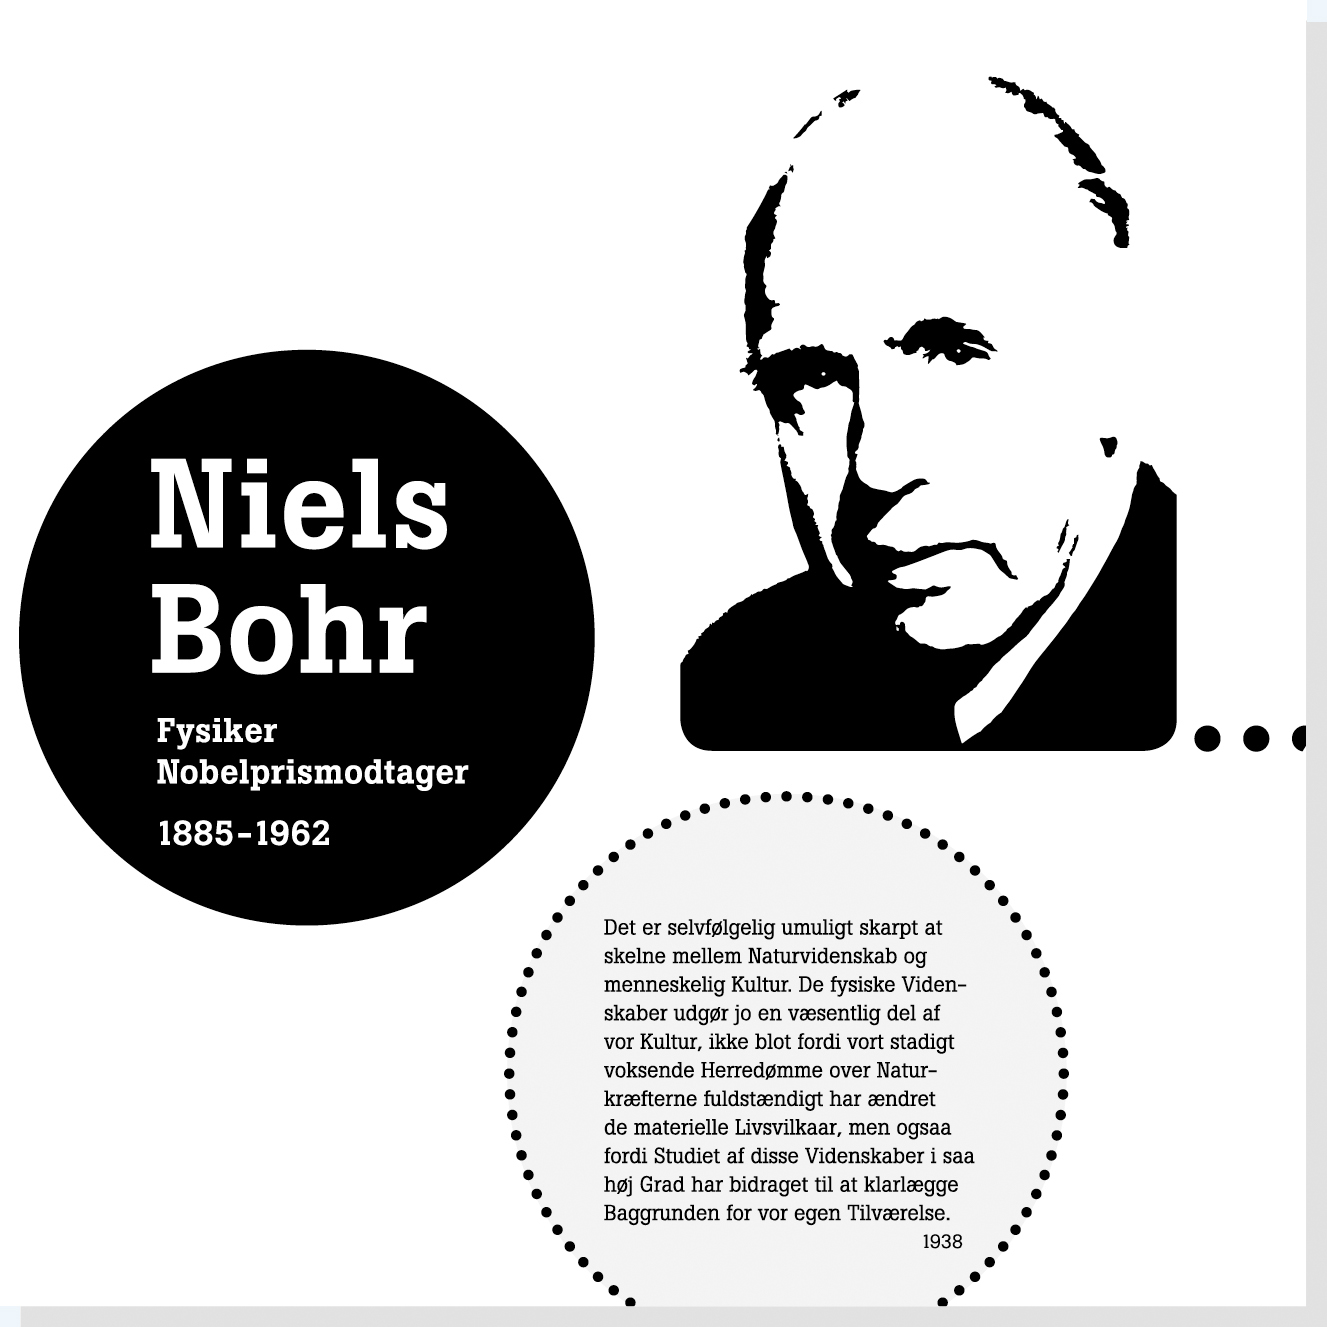 Niels Bohr er en af Rysensteens 22 udvalgte danske dannelsespersoner